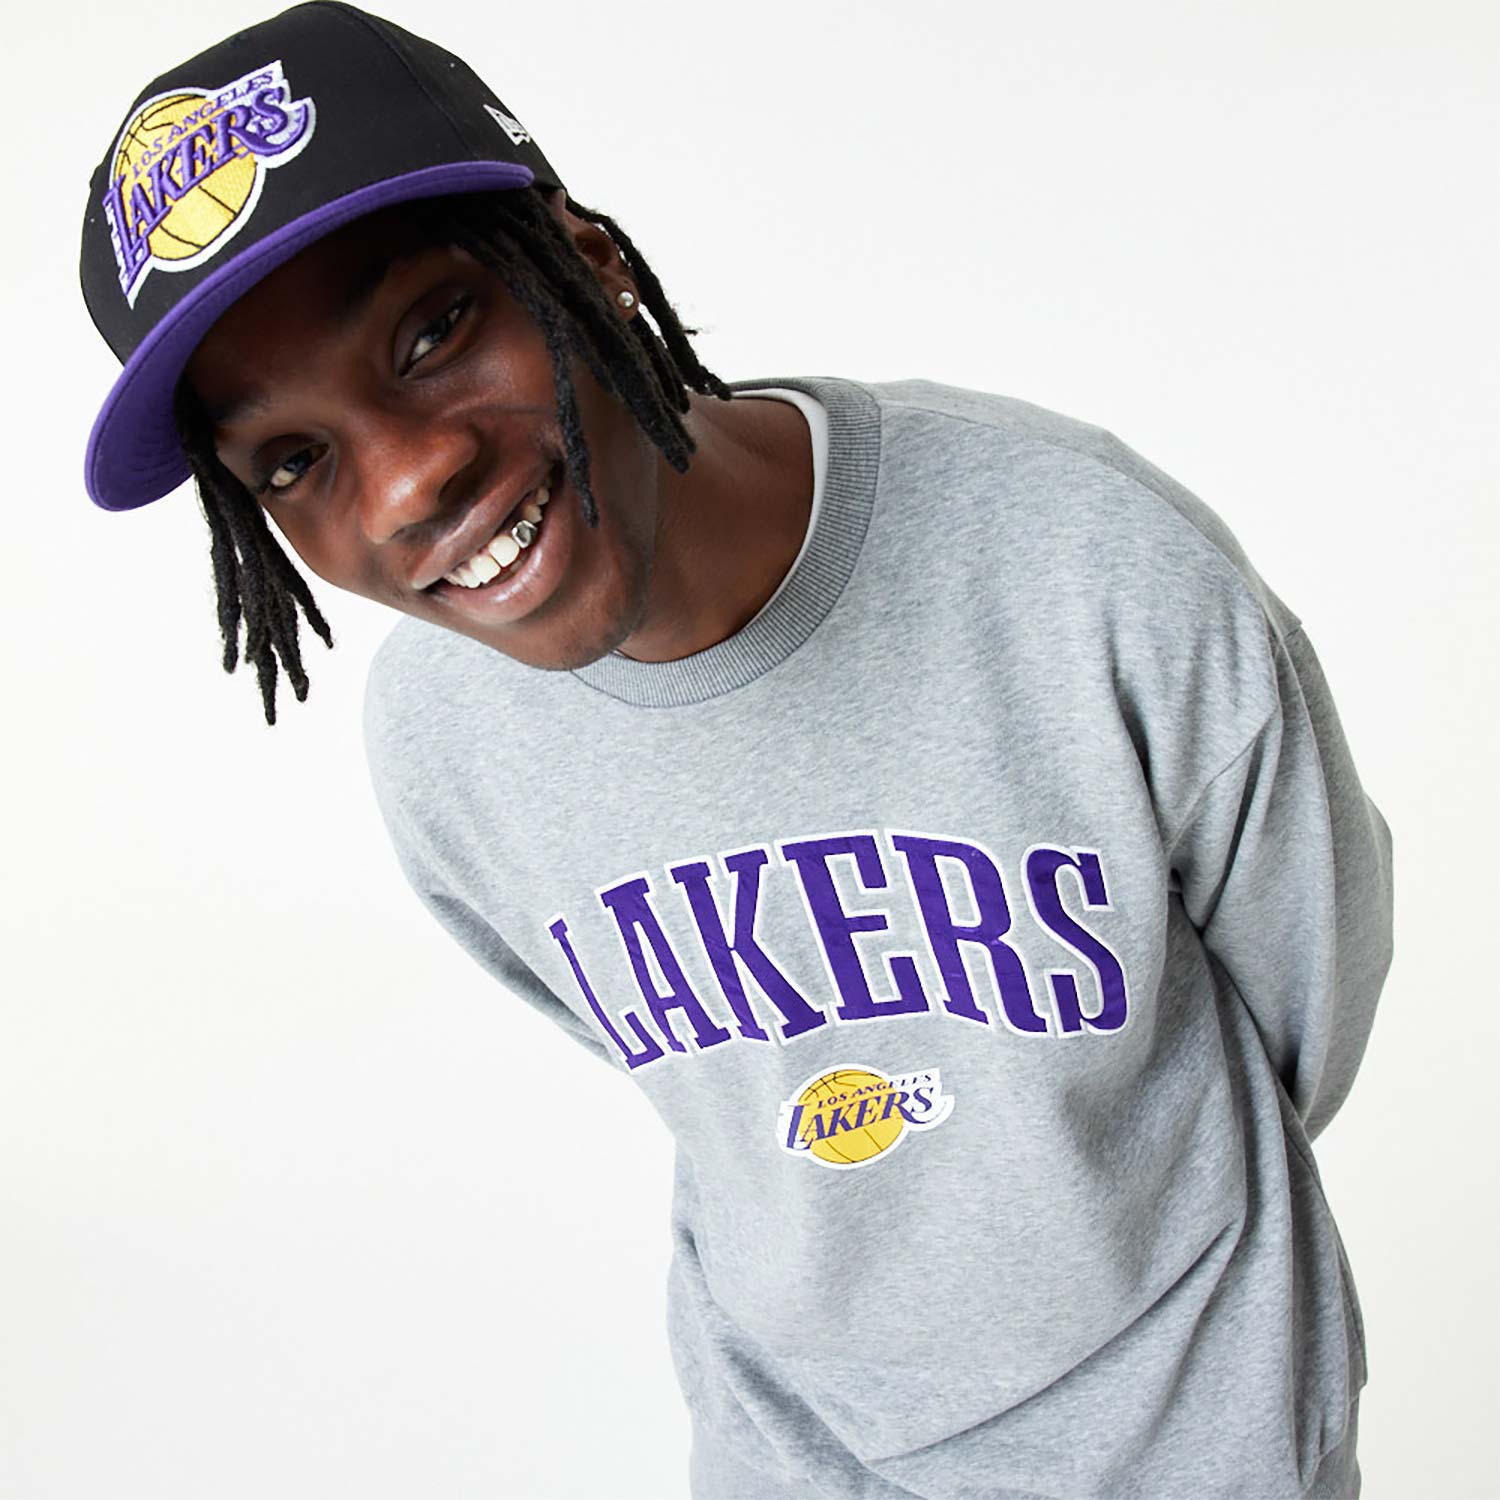 LA Lakers NBA Applique Grey Crew Neck Sweatshirt